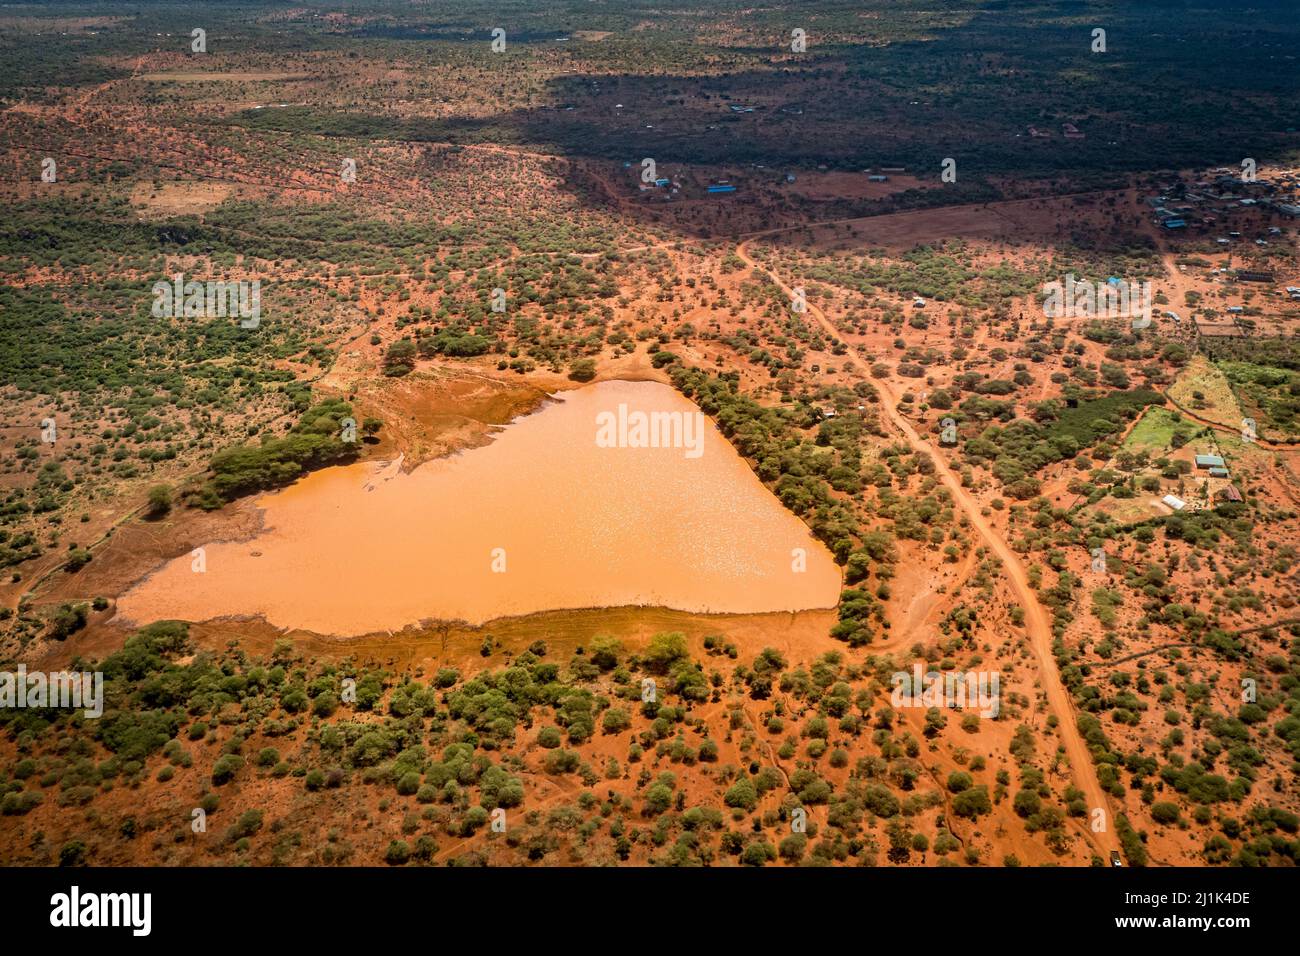 Belle vue aérienne d'un point d'eau orange entouré de sol africain rouge dans la savane du Kenya Banque D'Images